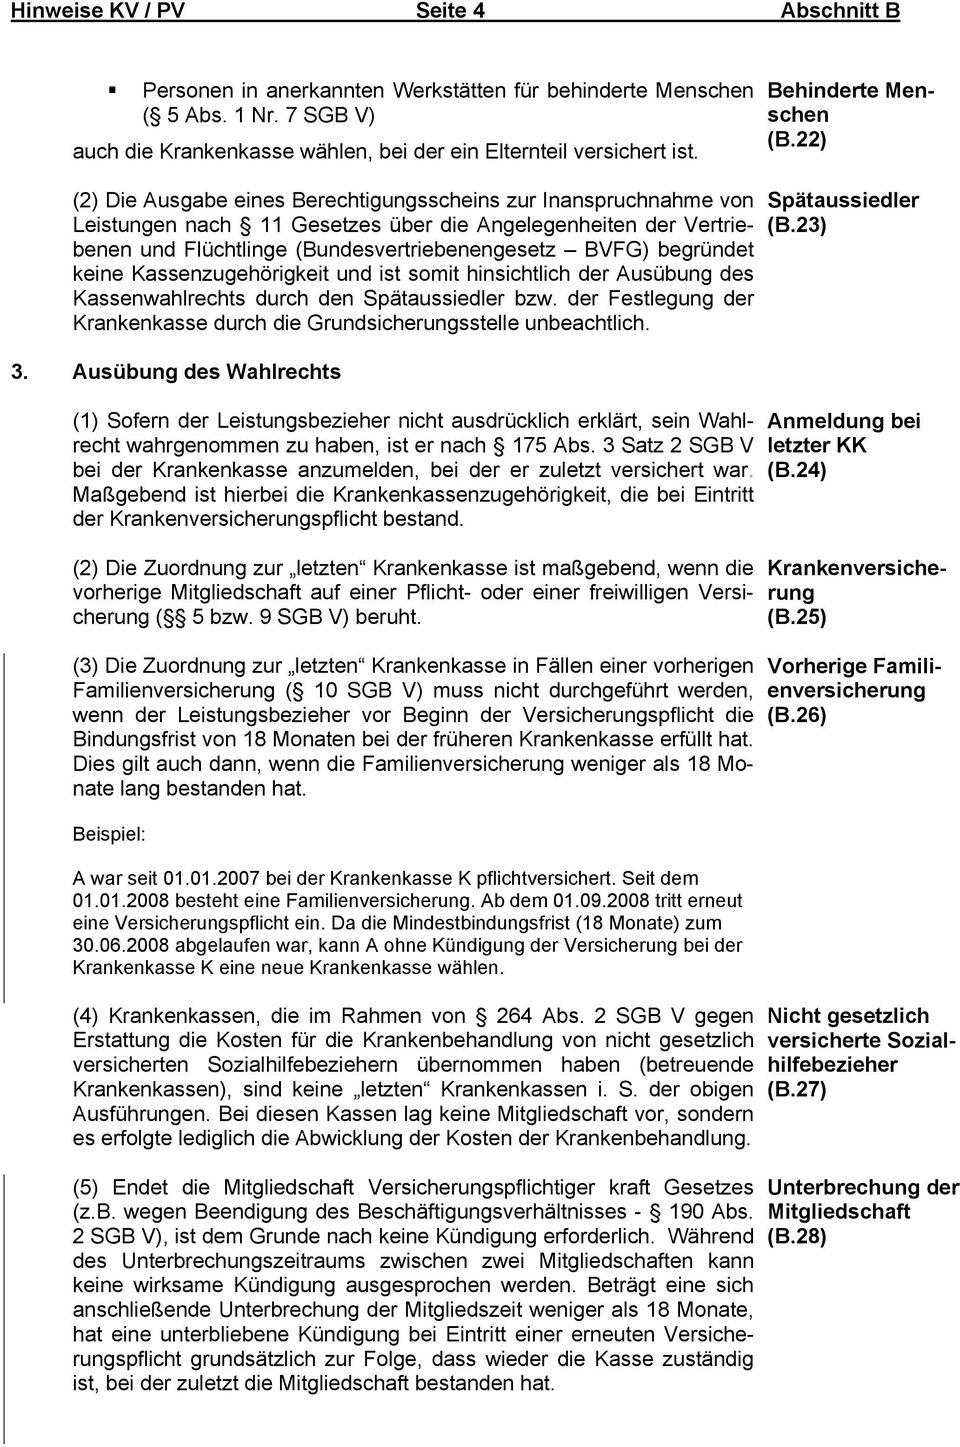 22) (2) Die Ausgabe eines Berechtigungsscheins zur Inanspruchnahme von Leistungen nach 11 Gesetzes über die Angelegenheiten der Vertriebenen und Flüchtlinge (Bundesvertriebenengesetz BVFG) begründet